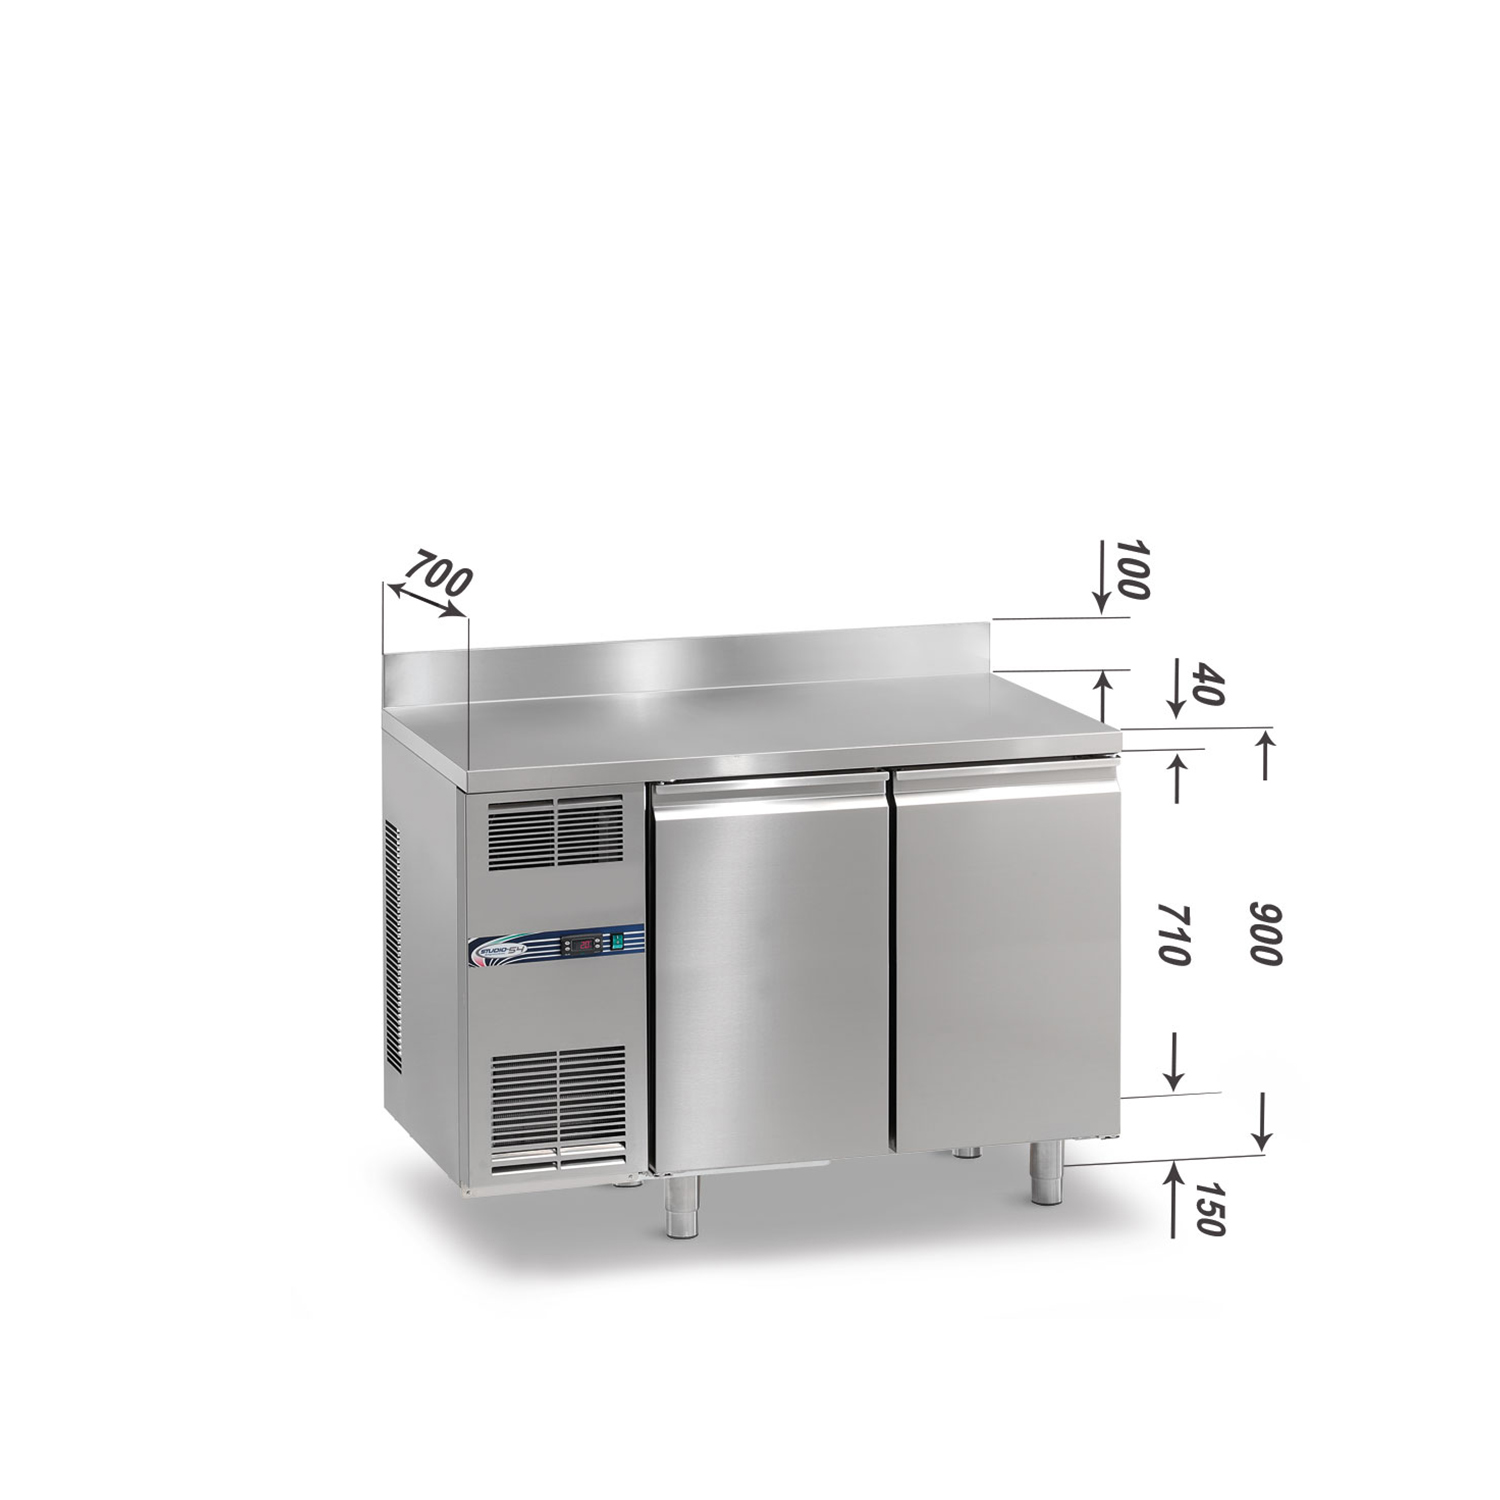 Tiefkühltisch DAIQUIRI Top Line H710 GN 1/1, B 1280  x T 700 x H 900+100 mm, 2 Kühlfächer, Arbeitsplatte mit Aufkantung